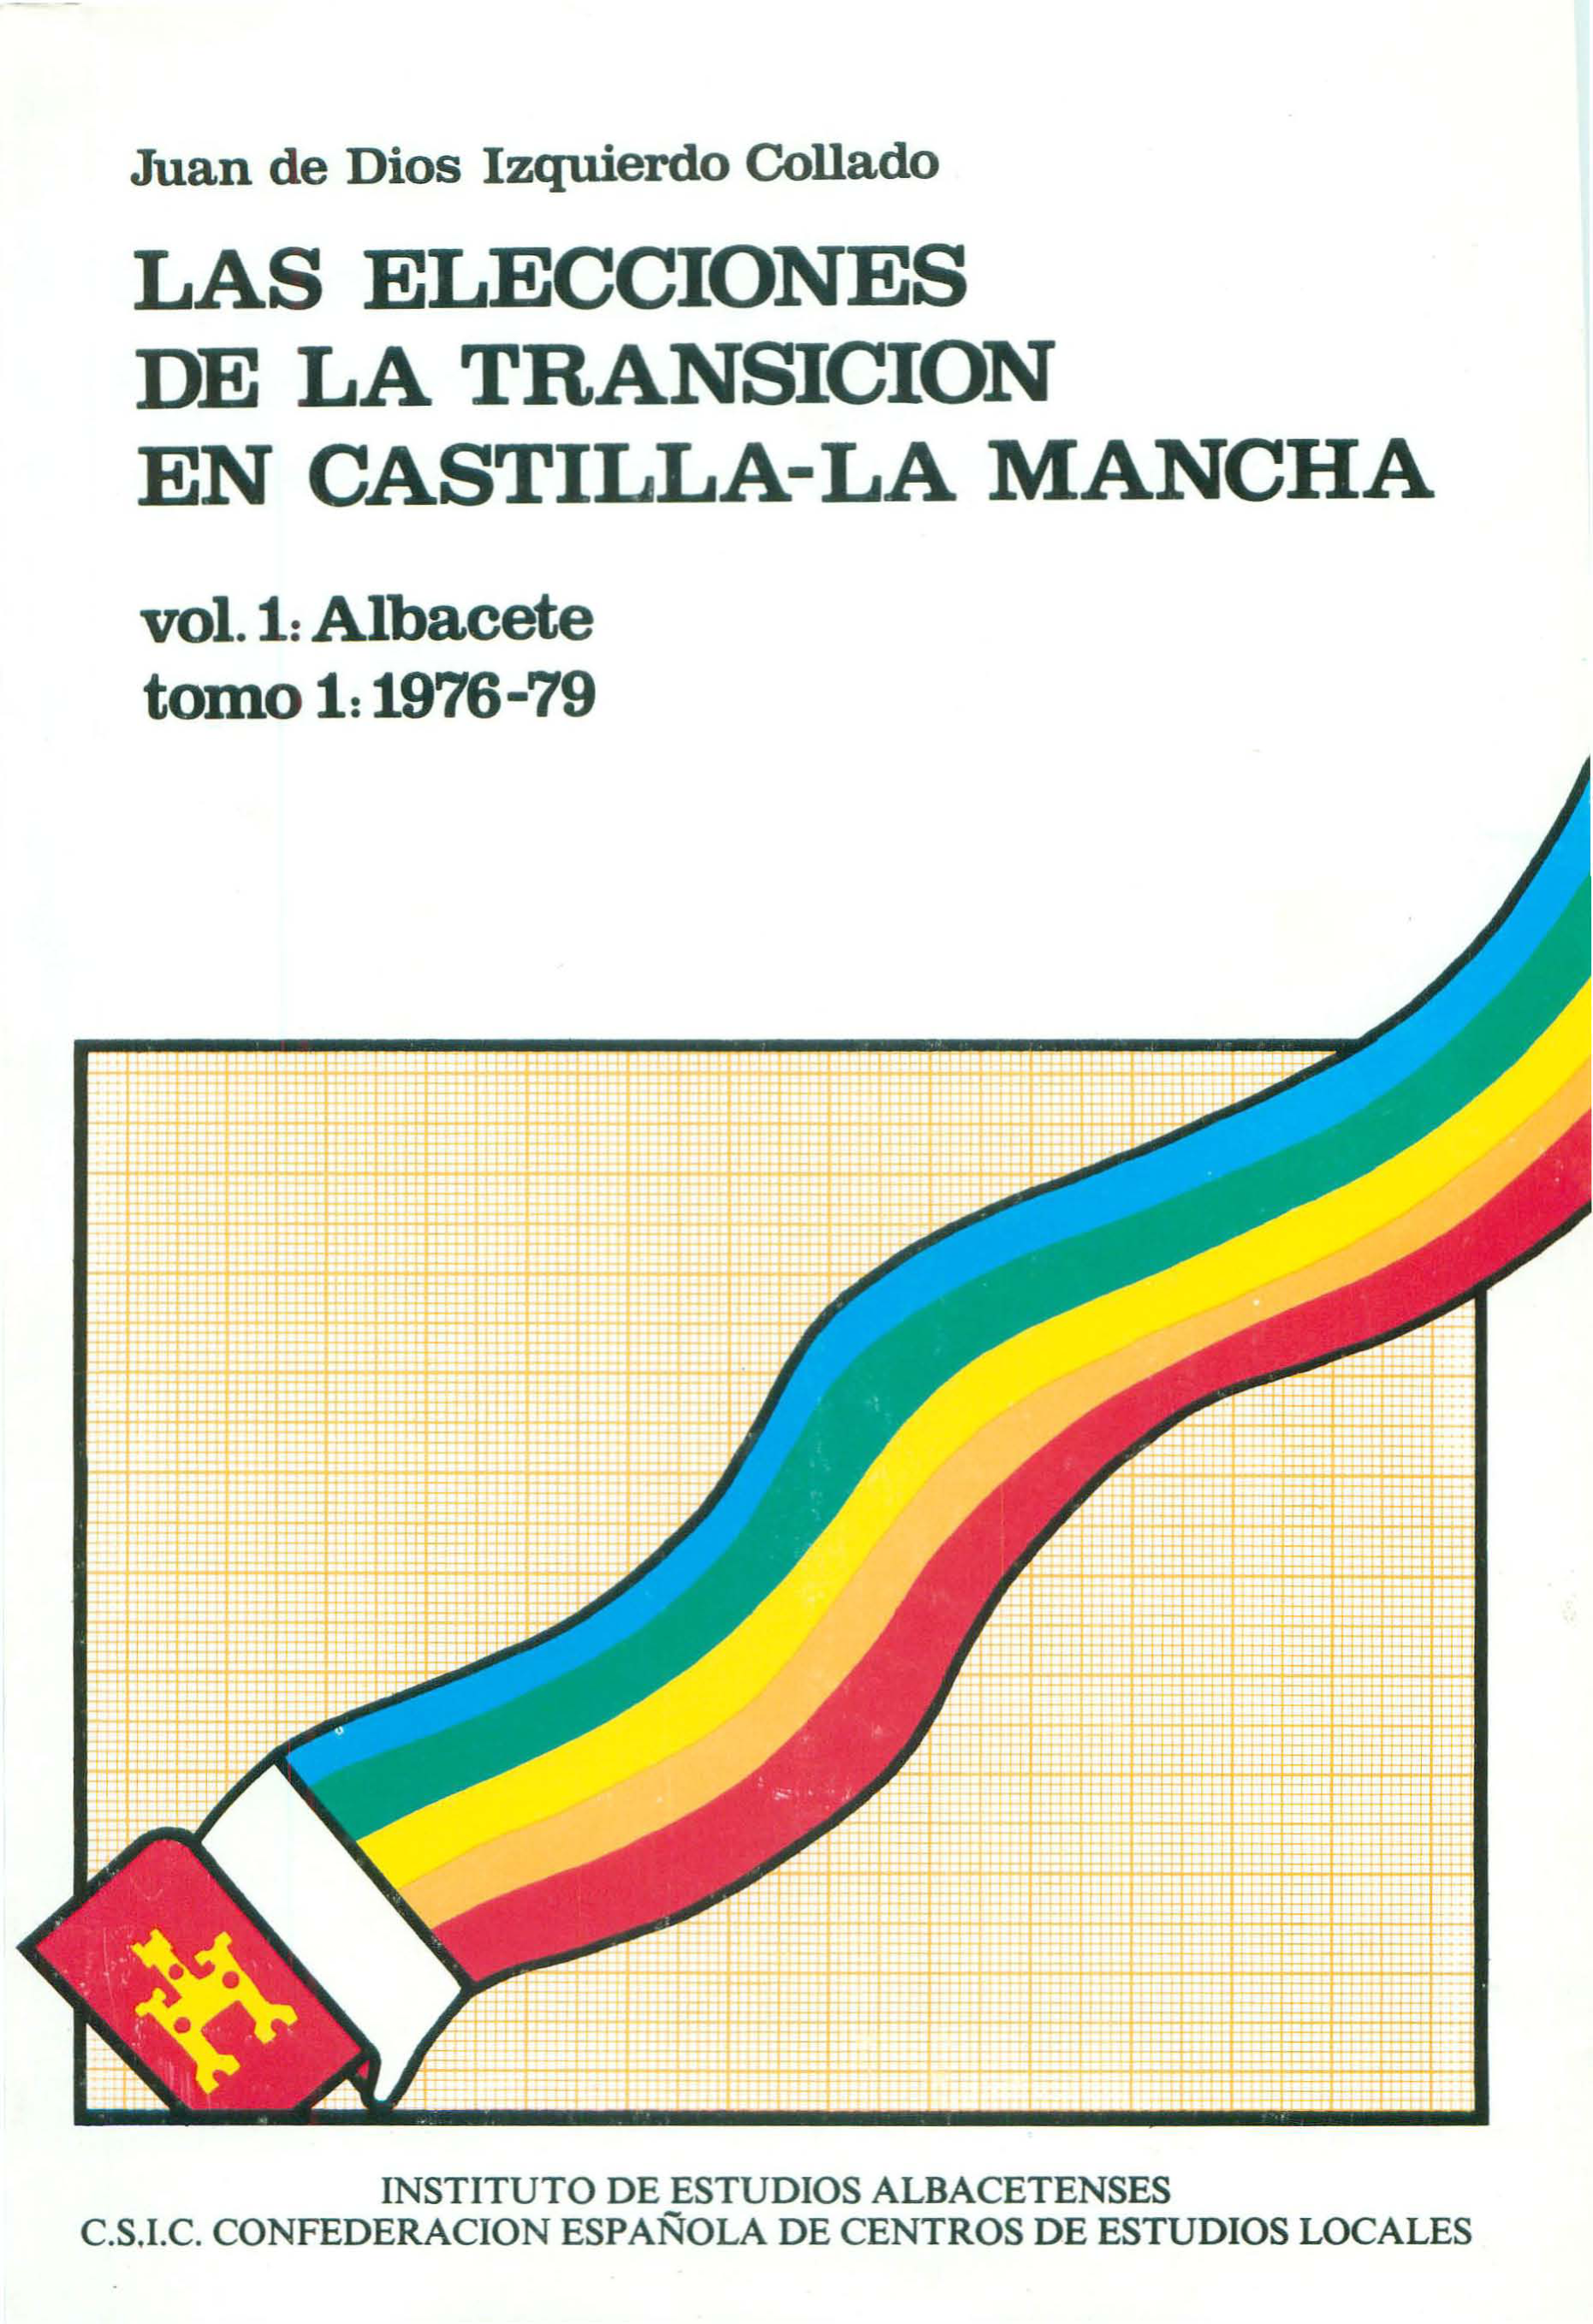 Imagen de portada del libro Las elecciones de la transición en Castilla-La Mancha, Vol. 1, Albacete